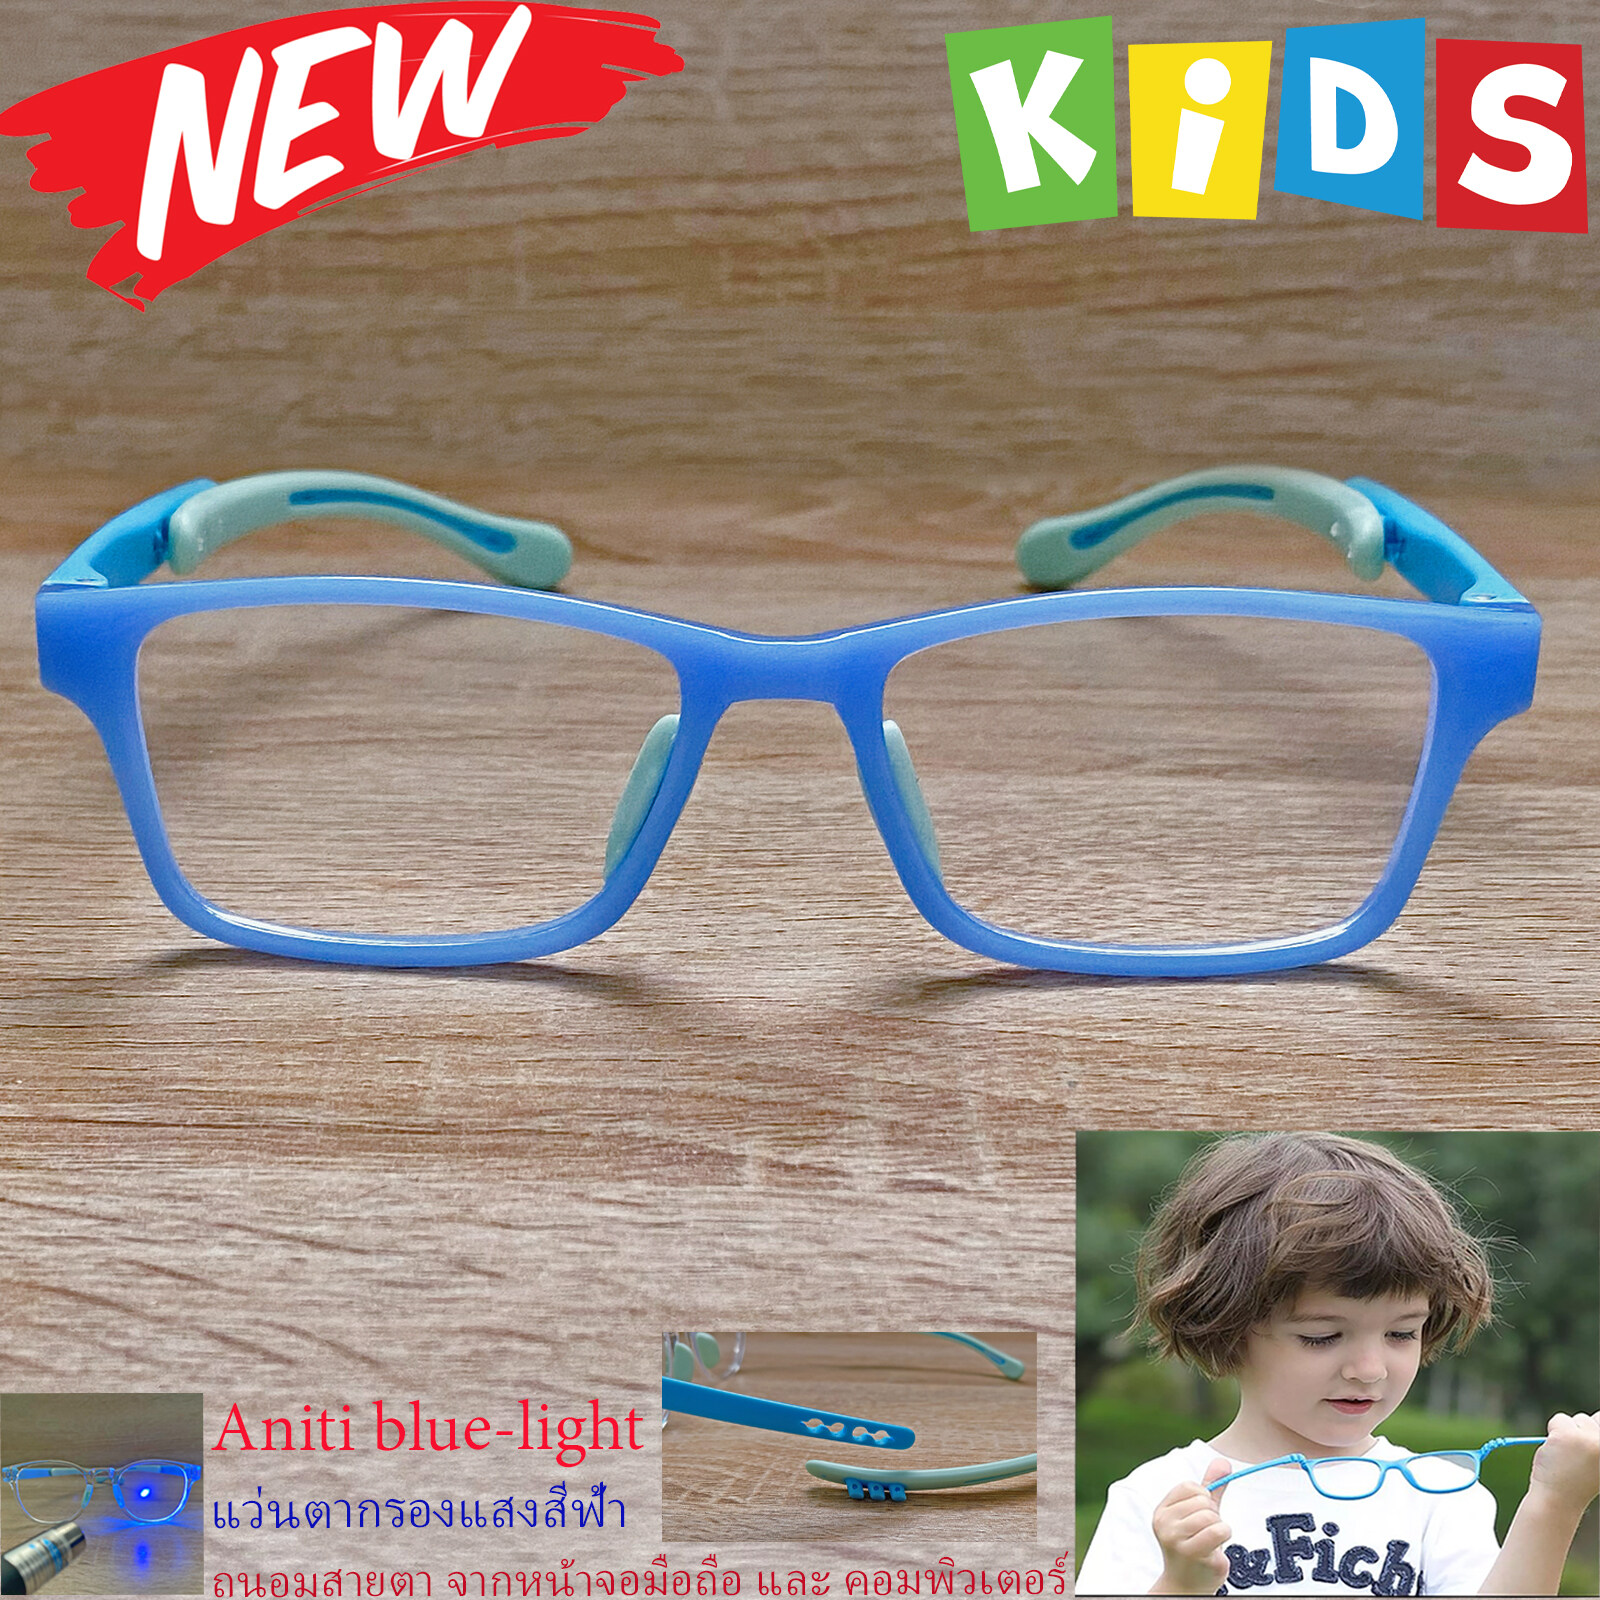 กรอบแว่นตาเด็ก กรองแสง สีฟ้า blue block แว่นเด็ก บลูบล็อค รุ่น 02 สีฟ้า ขาข้อต่อยืดหยุ่น ขาปรับระดับได้ วัสดุTR90 เหมาะสำหรับเลนส์สายตา